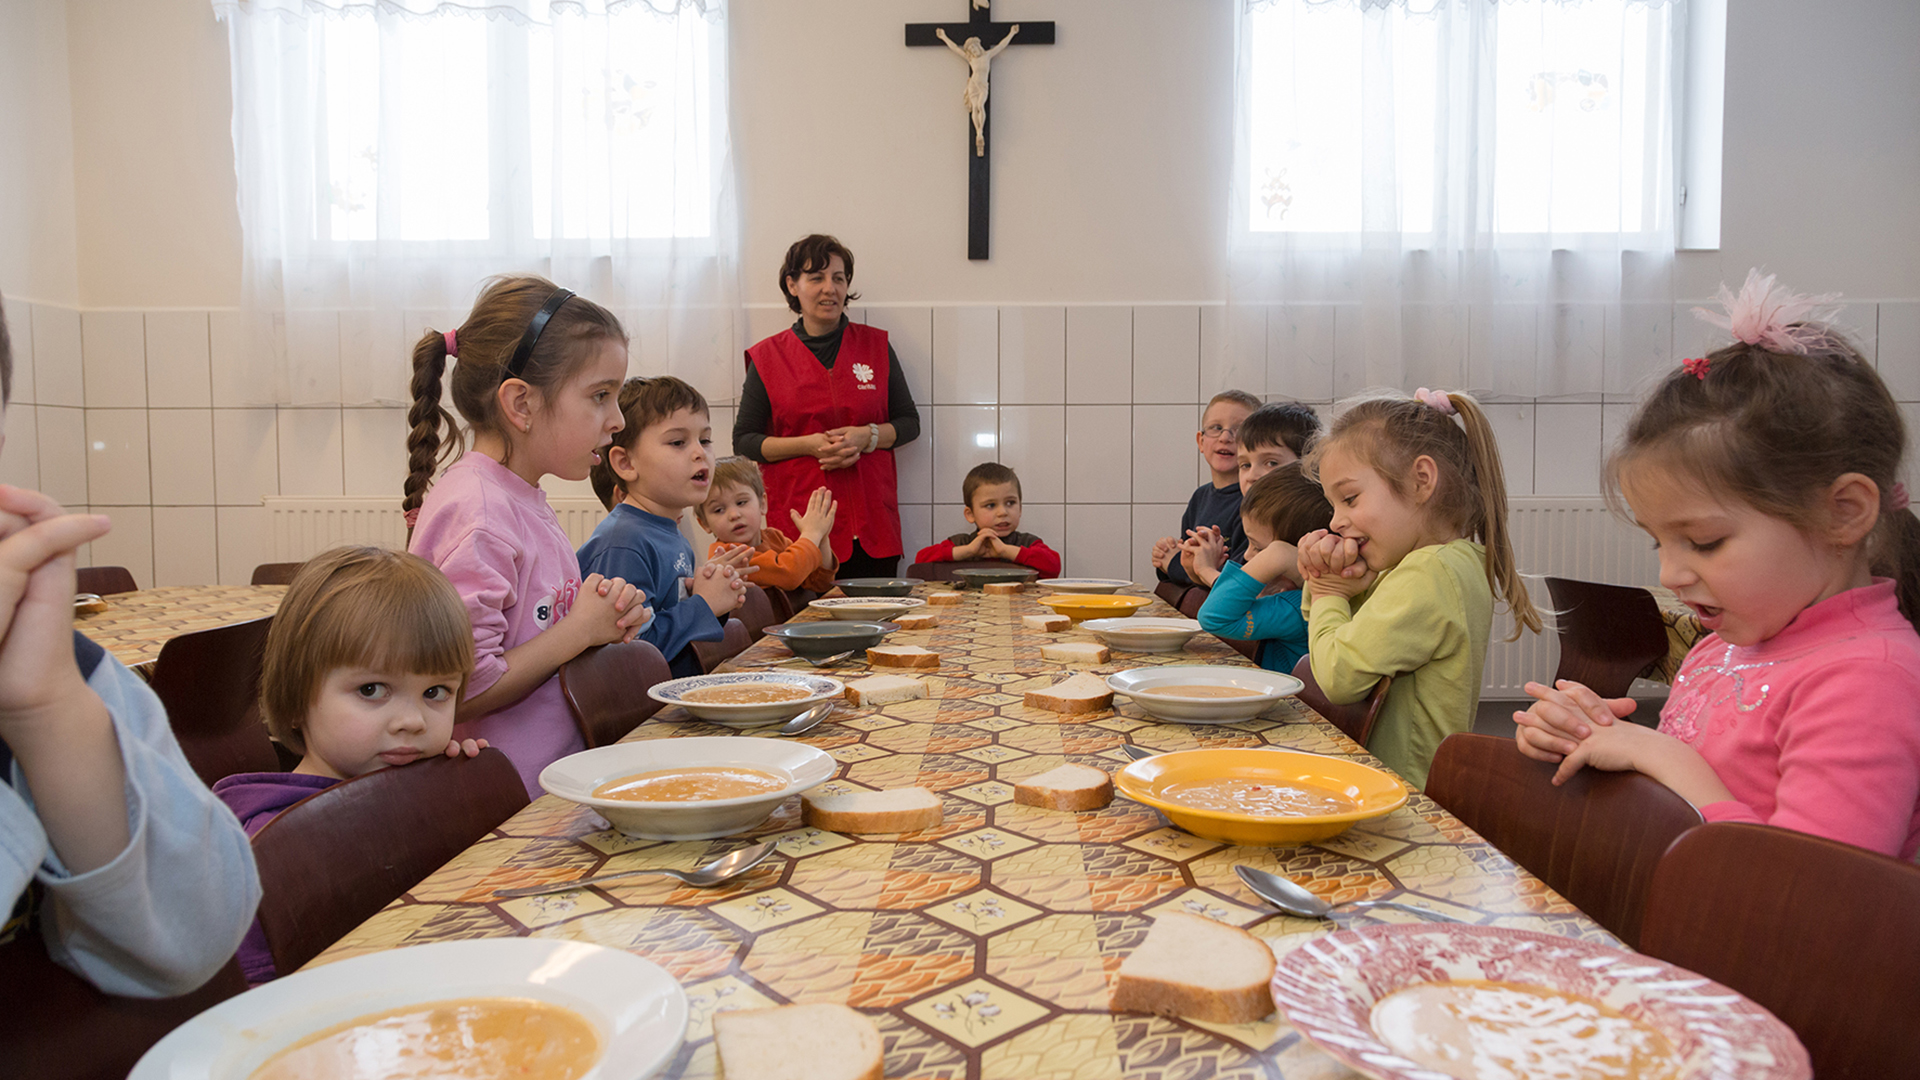 Gruppenfoto von Kindern und einer Frau an einem gemeinsamen Essenstisch mit Suppentellern. Im Hintergrund ist ein Holzkreuz an einer Wand zu erkennen.